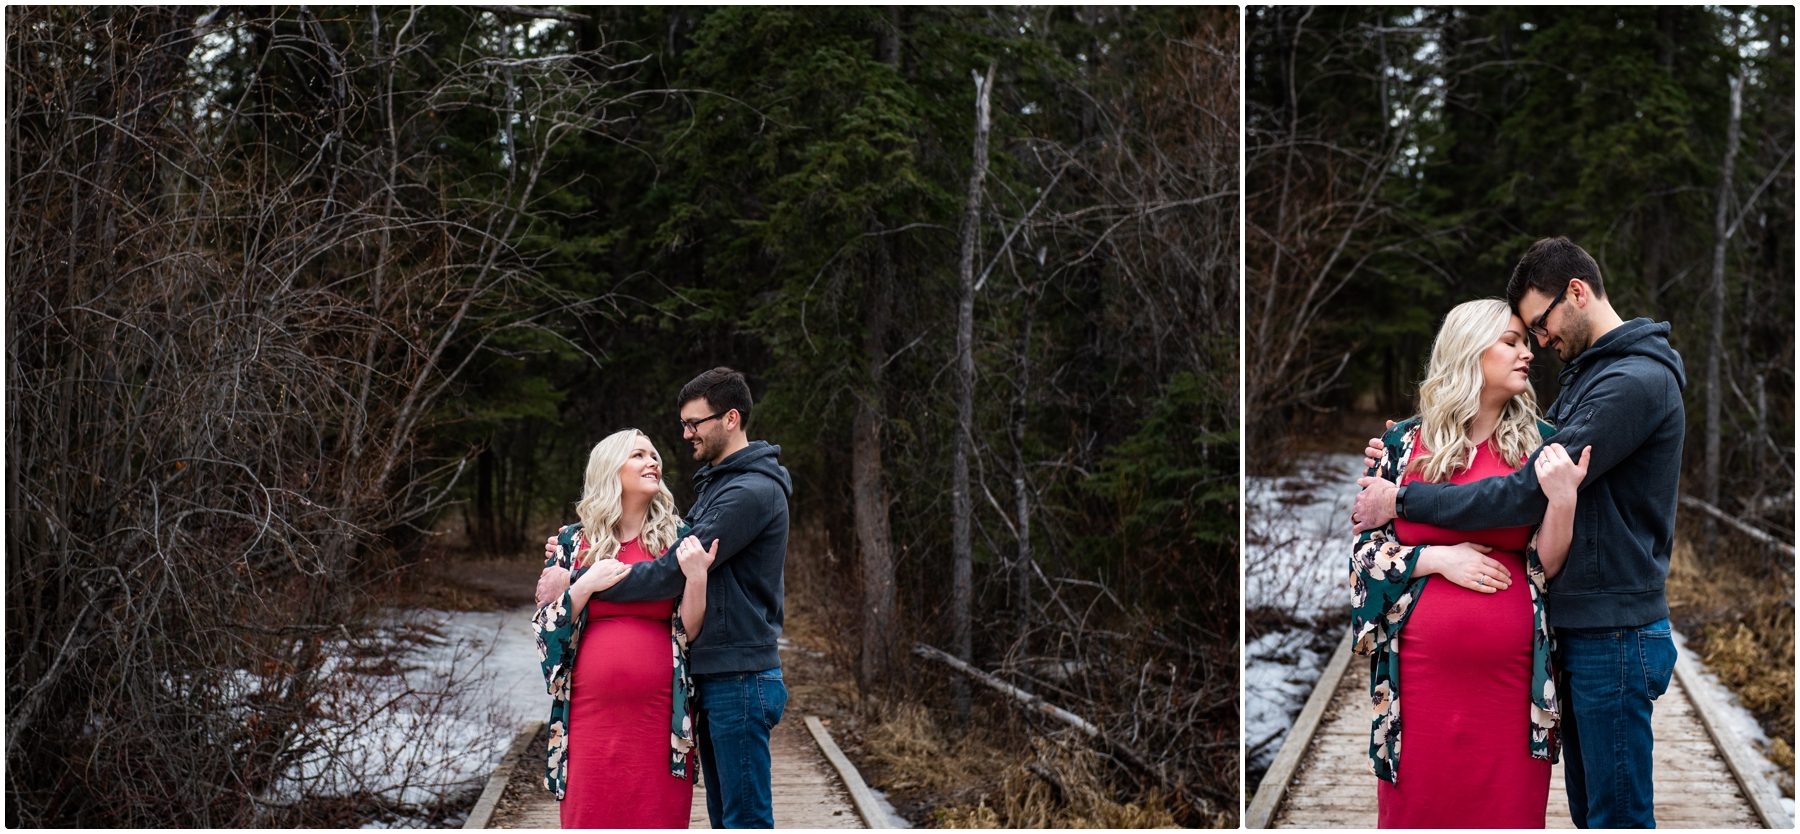 Calgary Maternity & Newborn Photographer